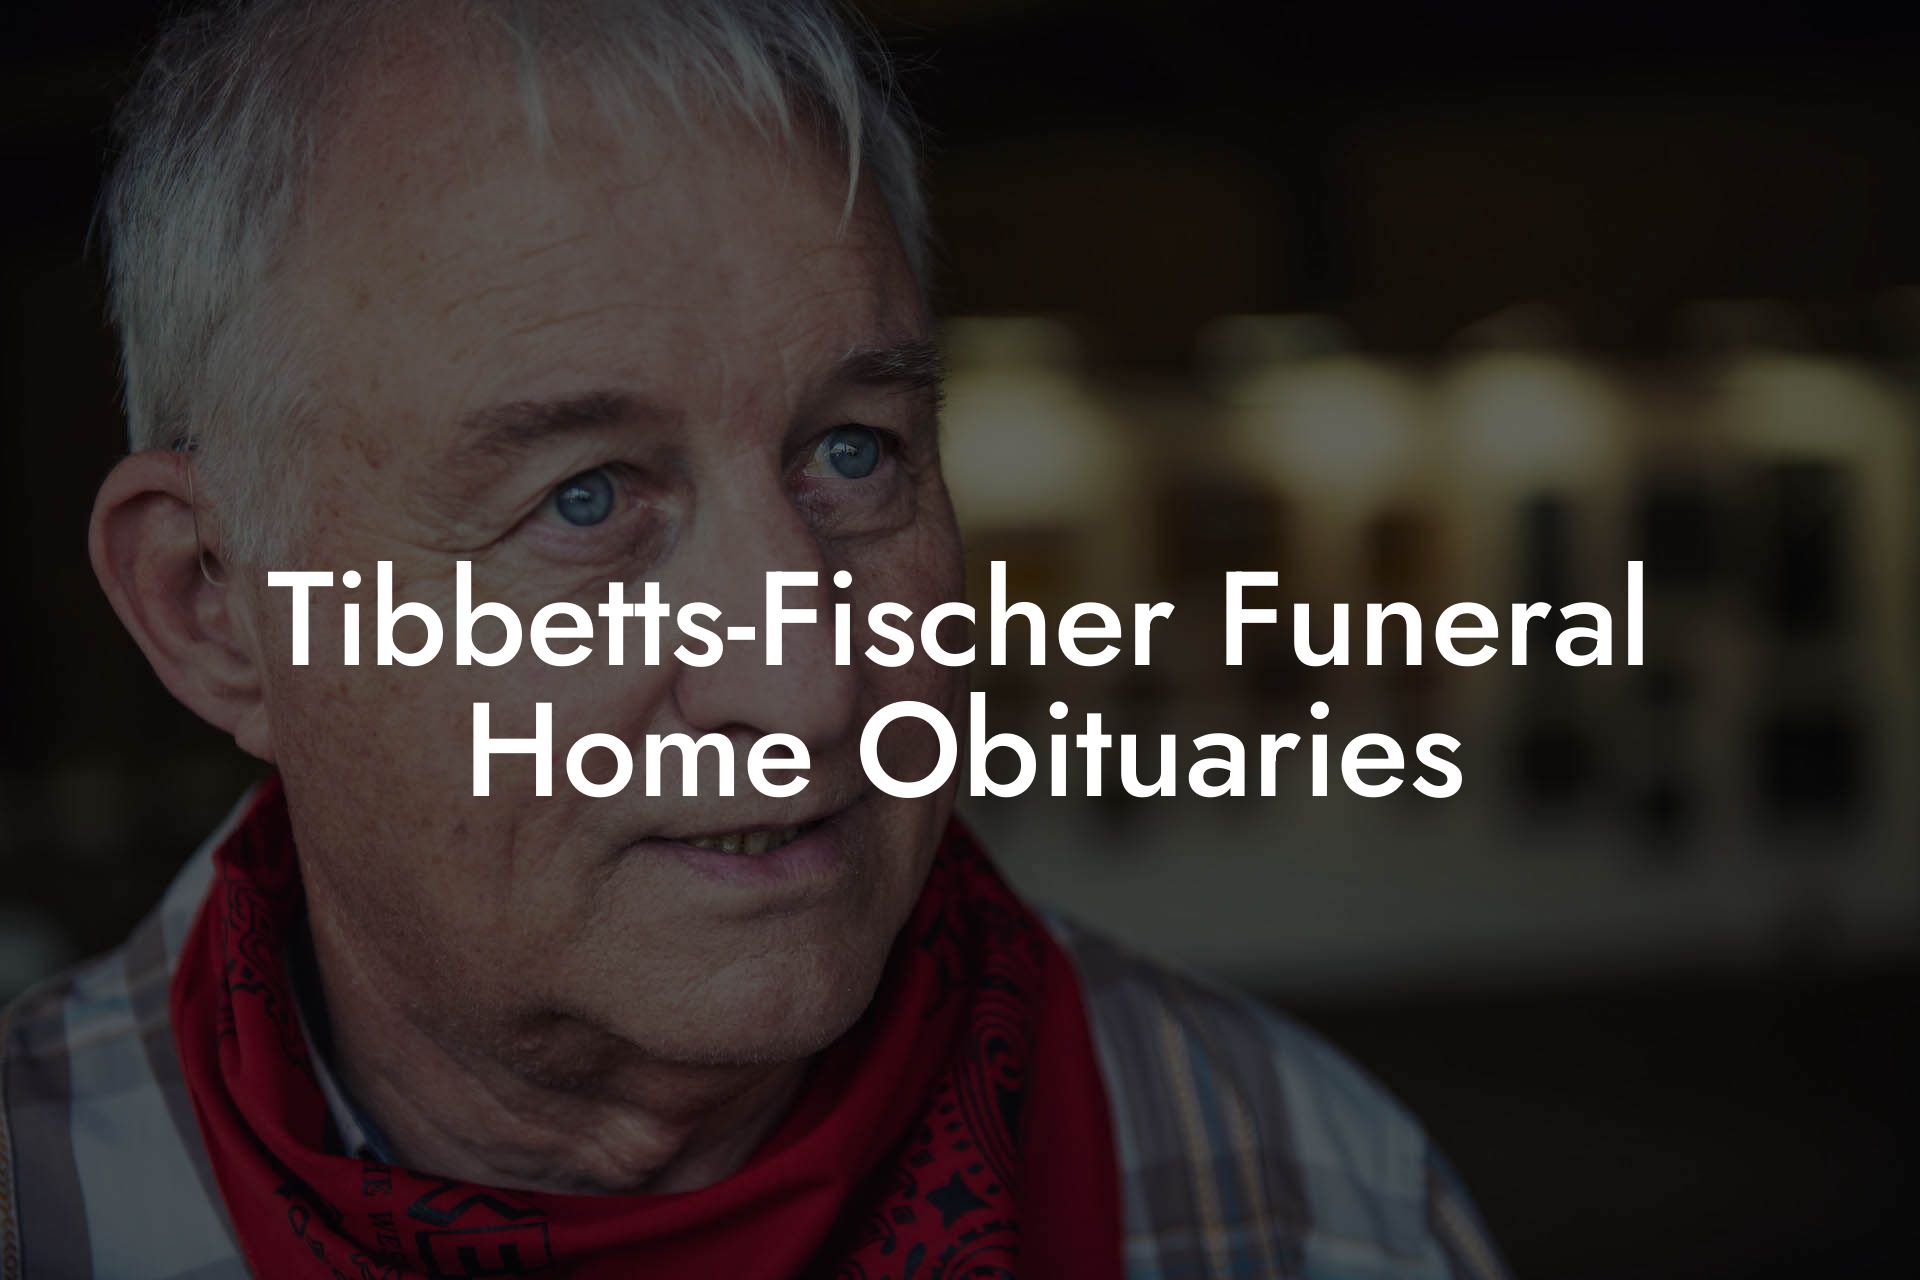 Tibbetts-Fischer Funeral Home Obituaries